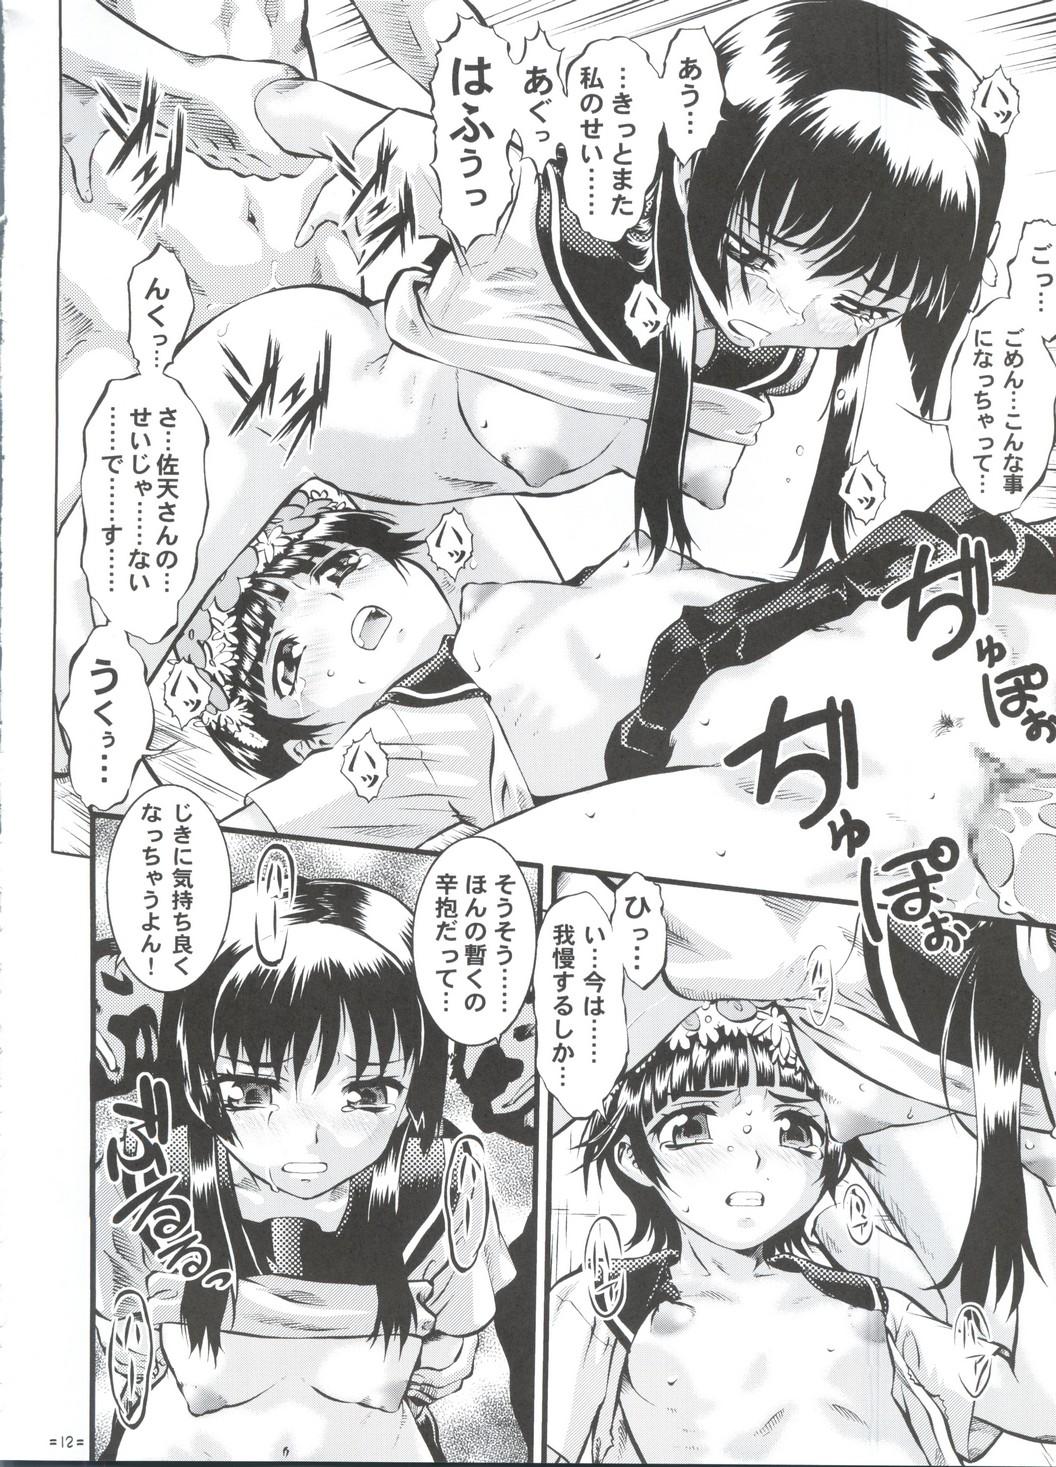 Milfsex W Poron TO-R - Toaru kagaku no railgun Koihime musou Cruising - Page 11